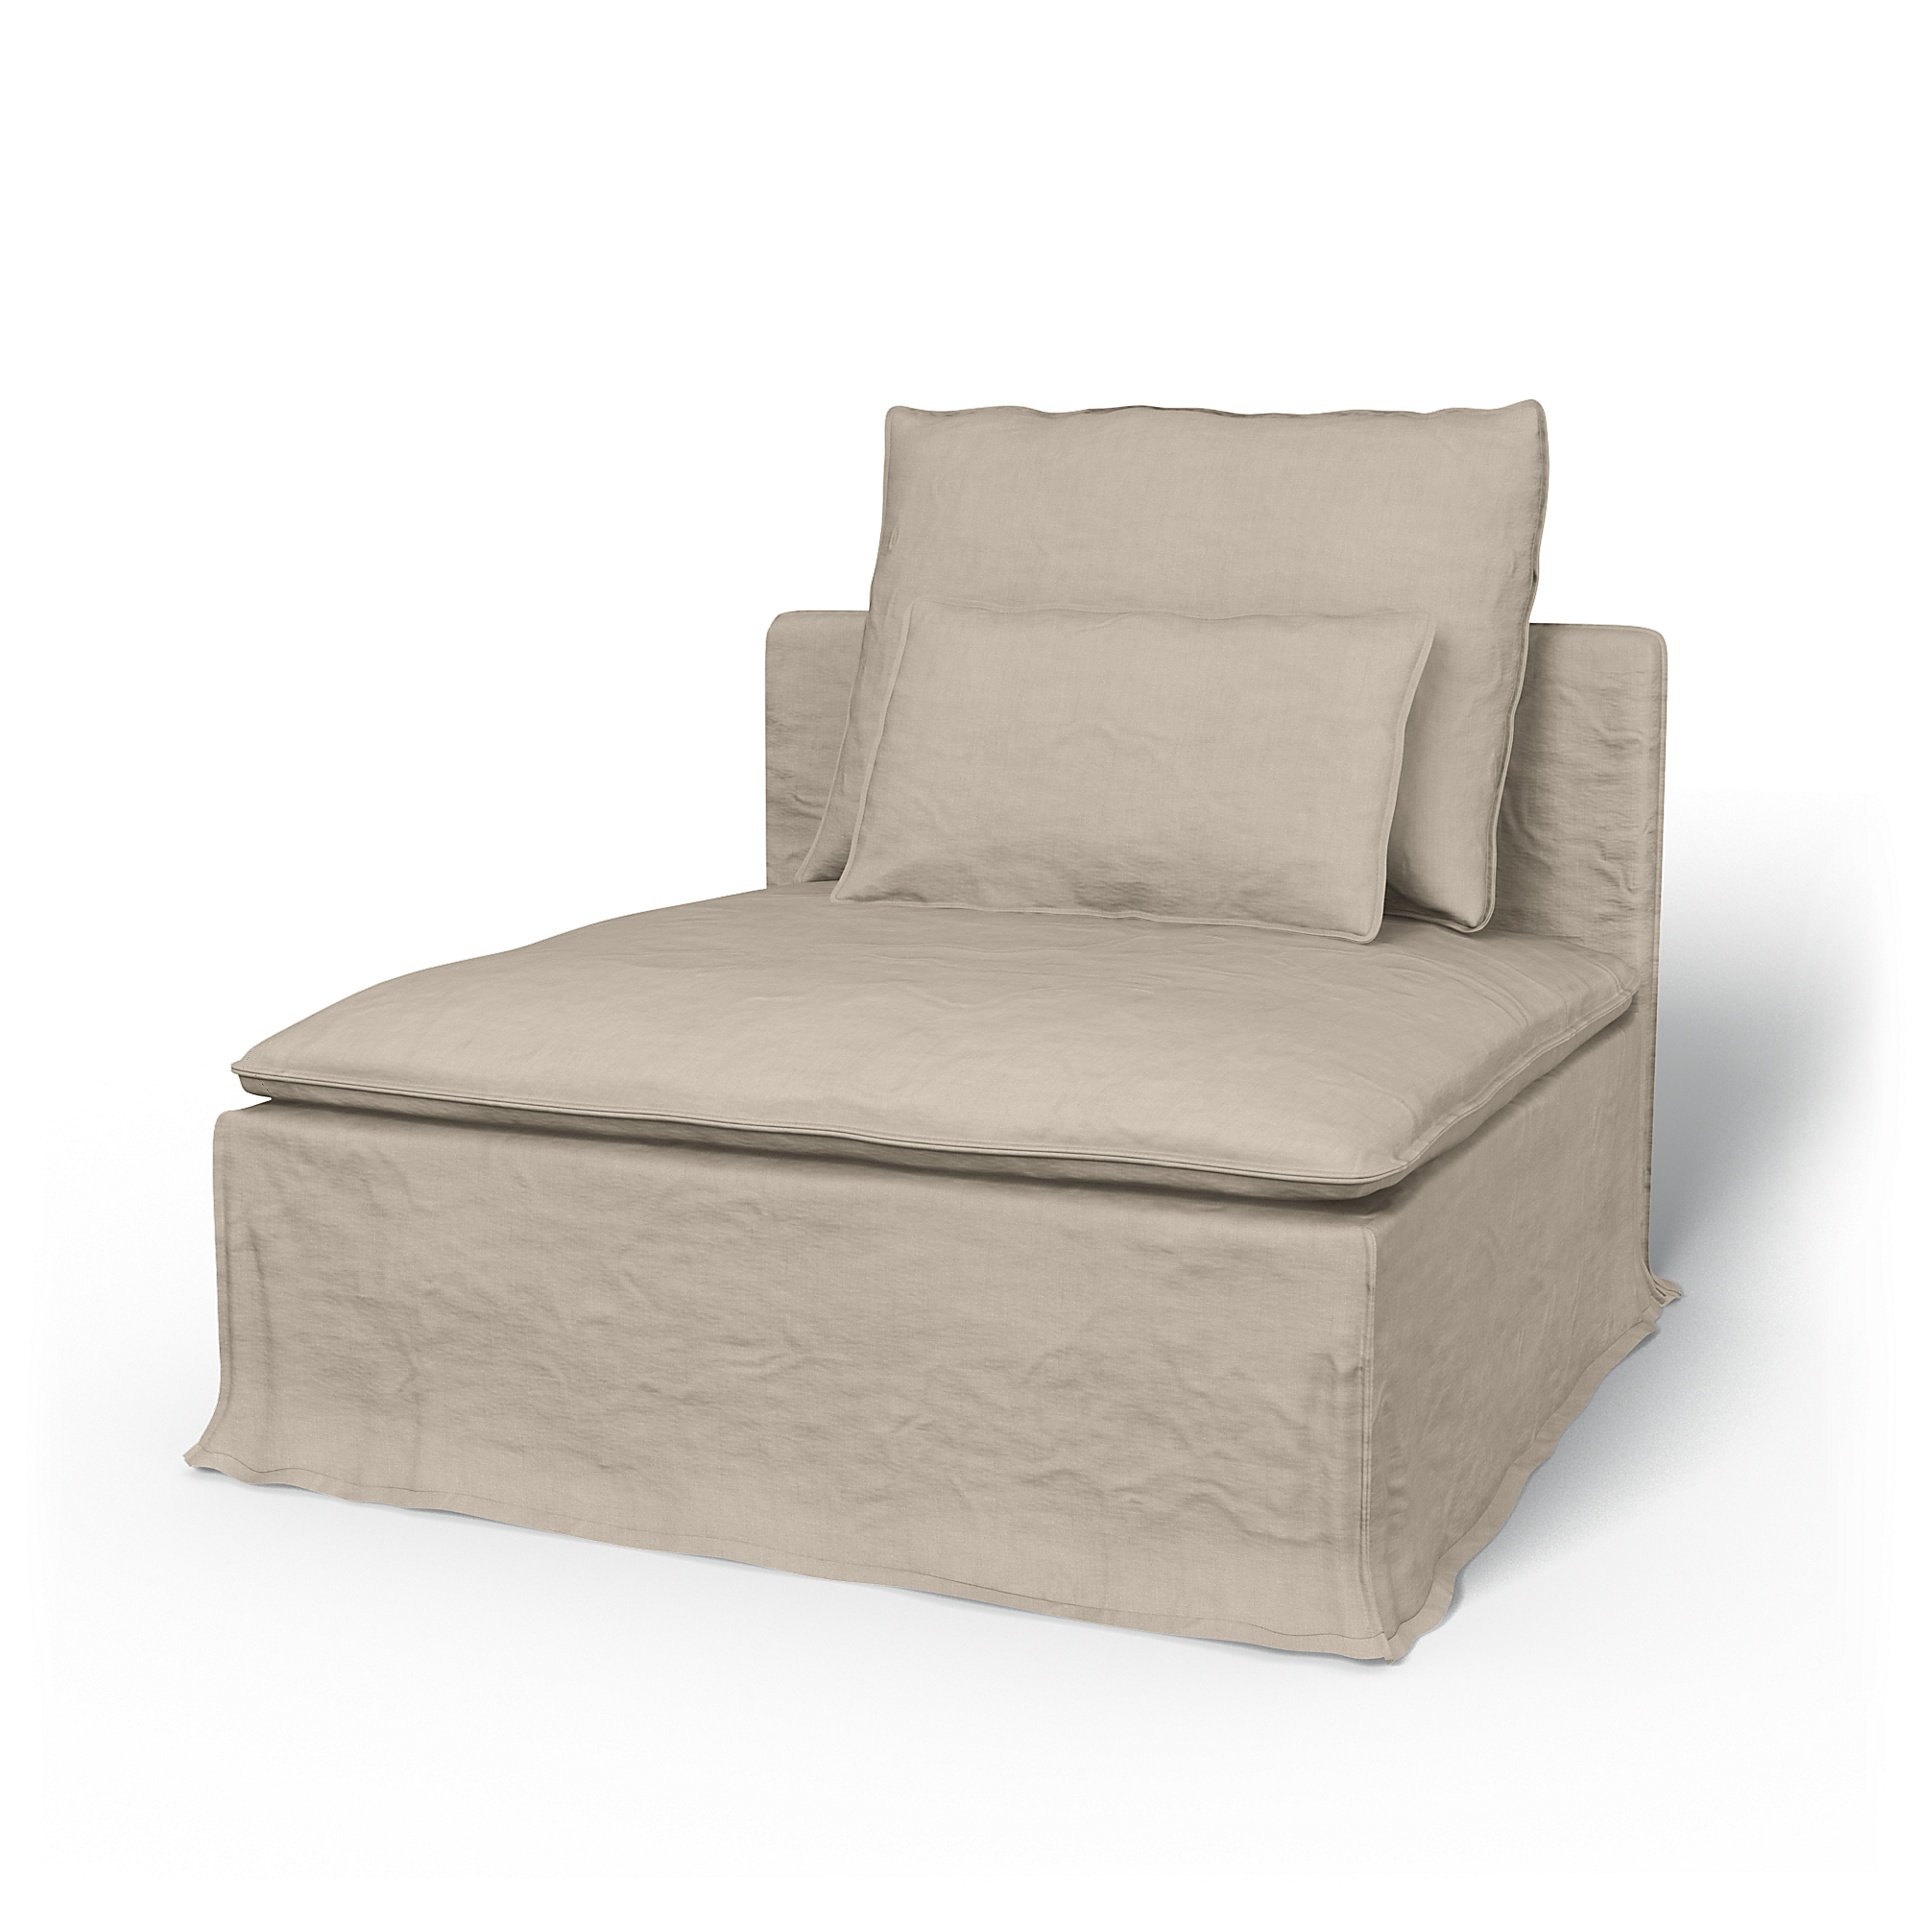 IKEA - Soderhamn 1 Seat Section Cover, Parchment, Linen - Bemz